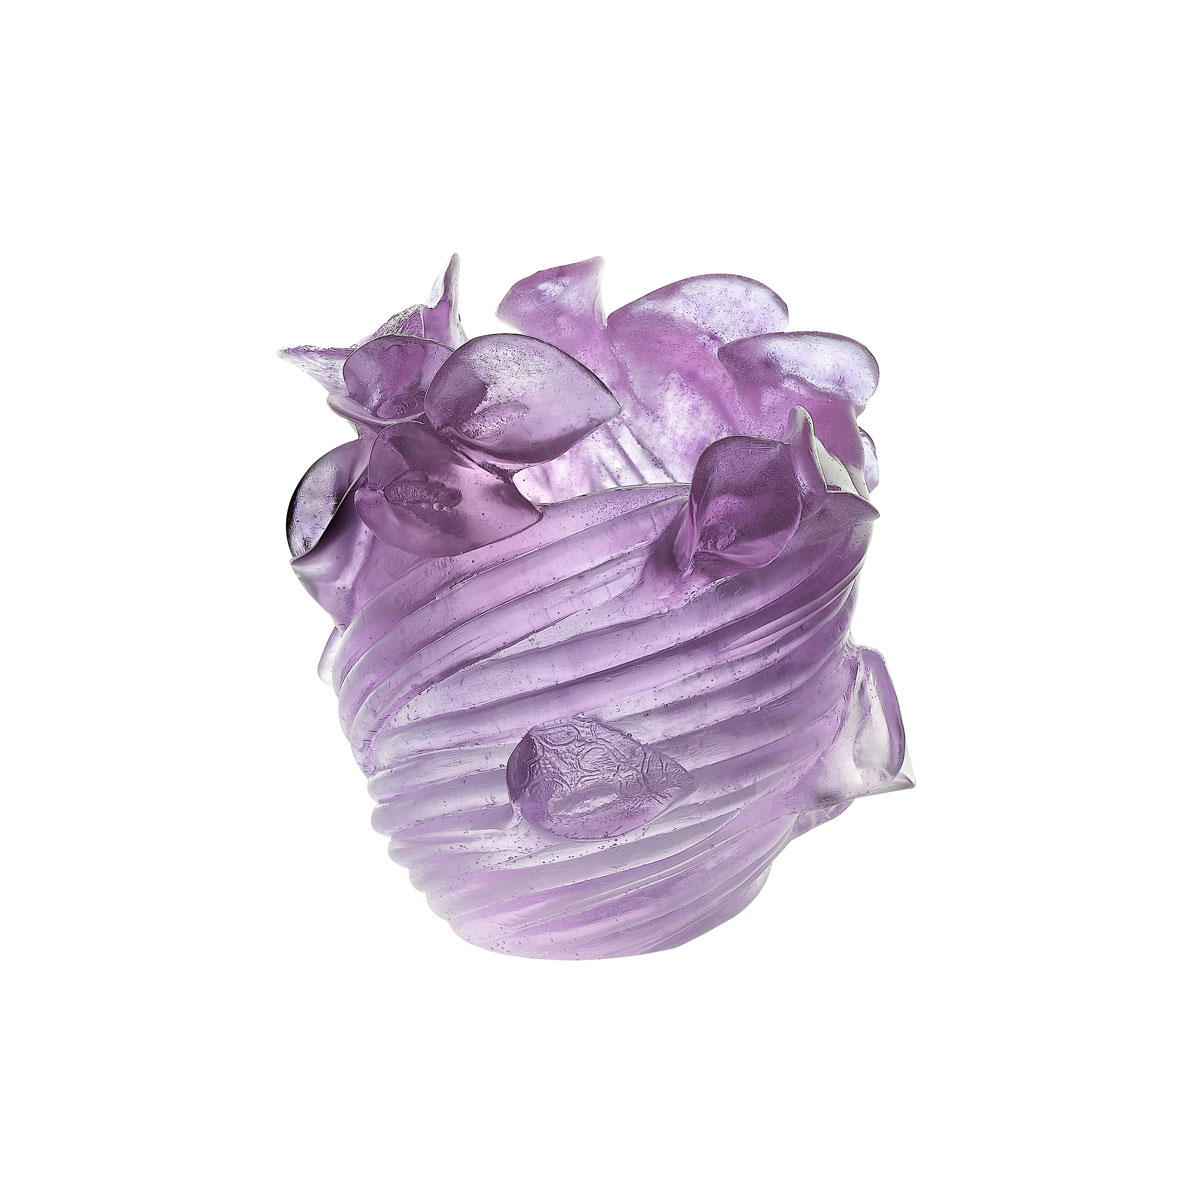 Daum 9.1" Arum Crystal Vase in Ultraviolet